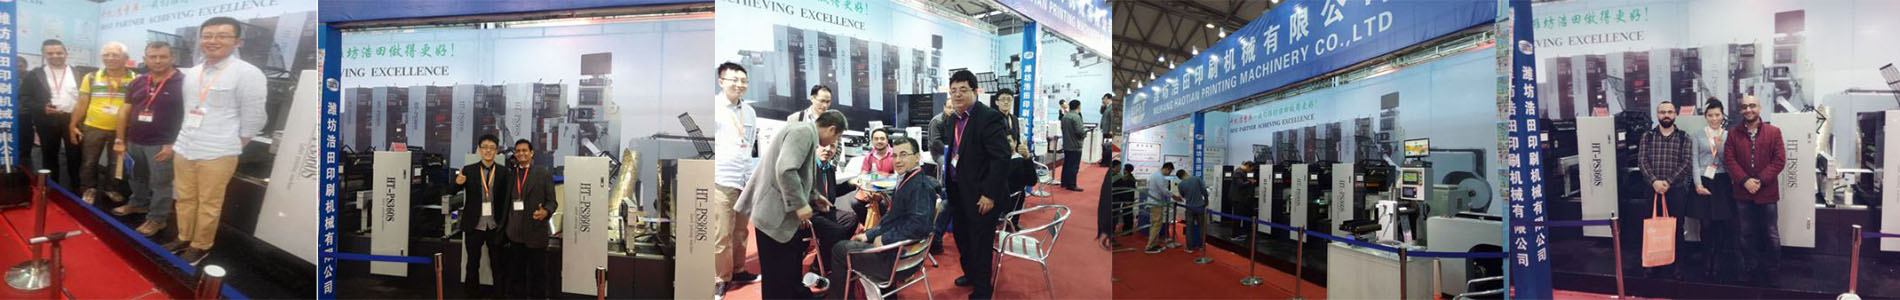 Exhibition cooperation